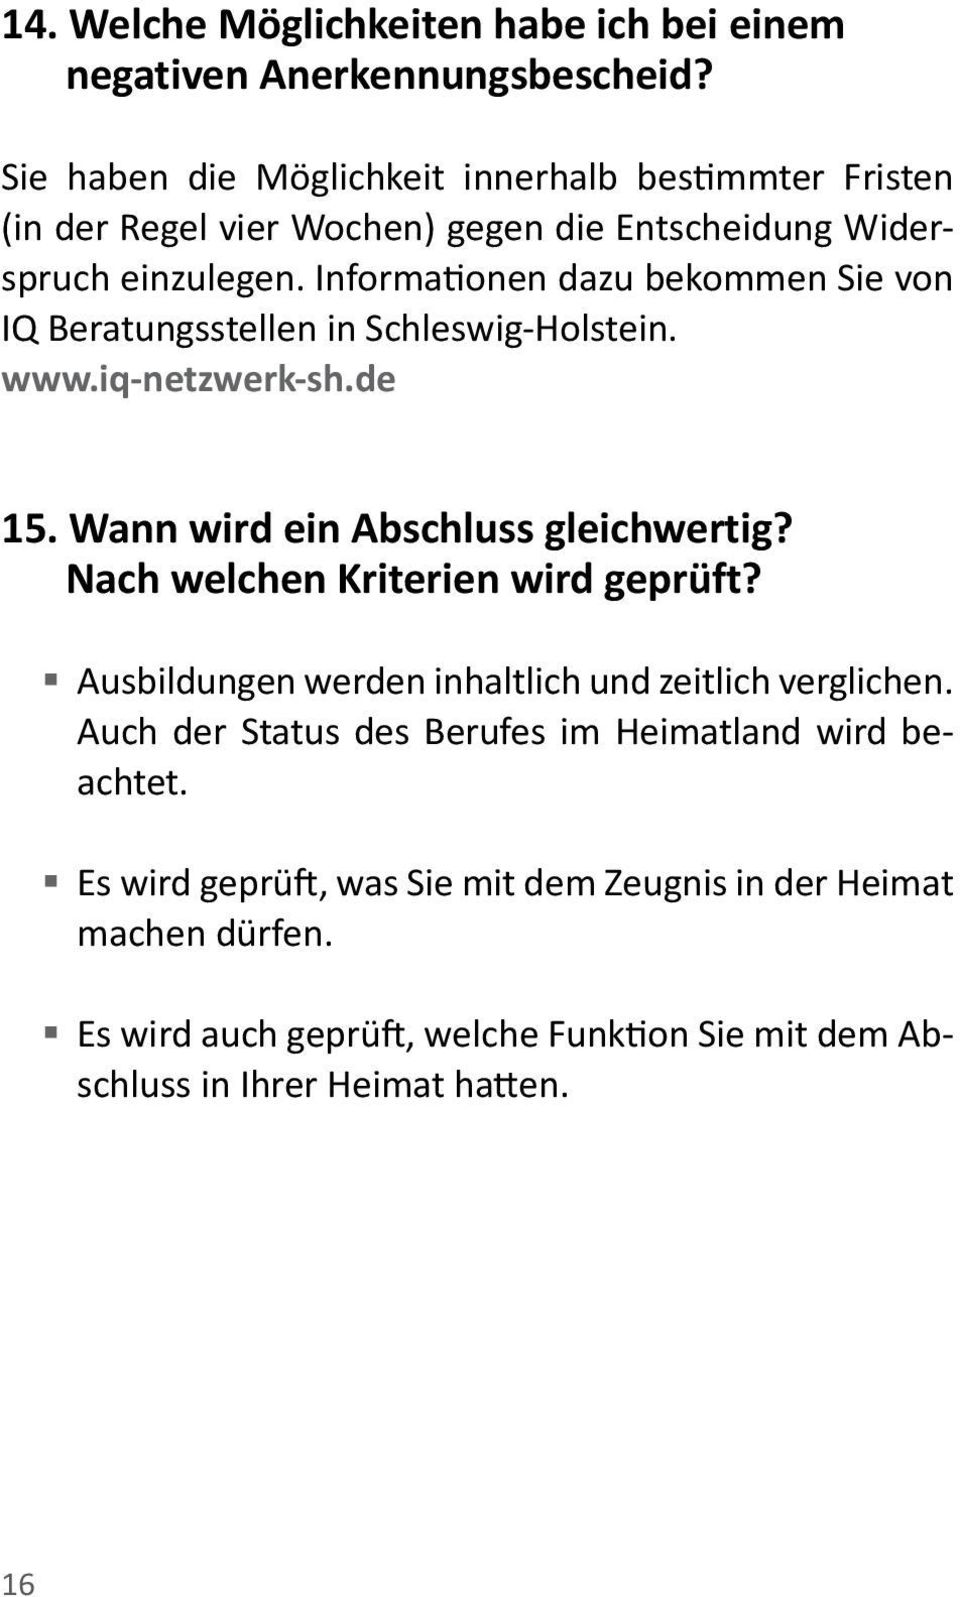 Informationen dazu bekommen Sie von IQ Beratungsstellen in Schleswig-Holstein. www.iq-netzwerk-sh.de 15. Wann wird ein Abschluss gleichwertig?